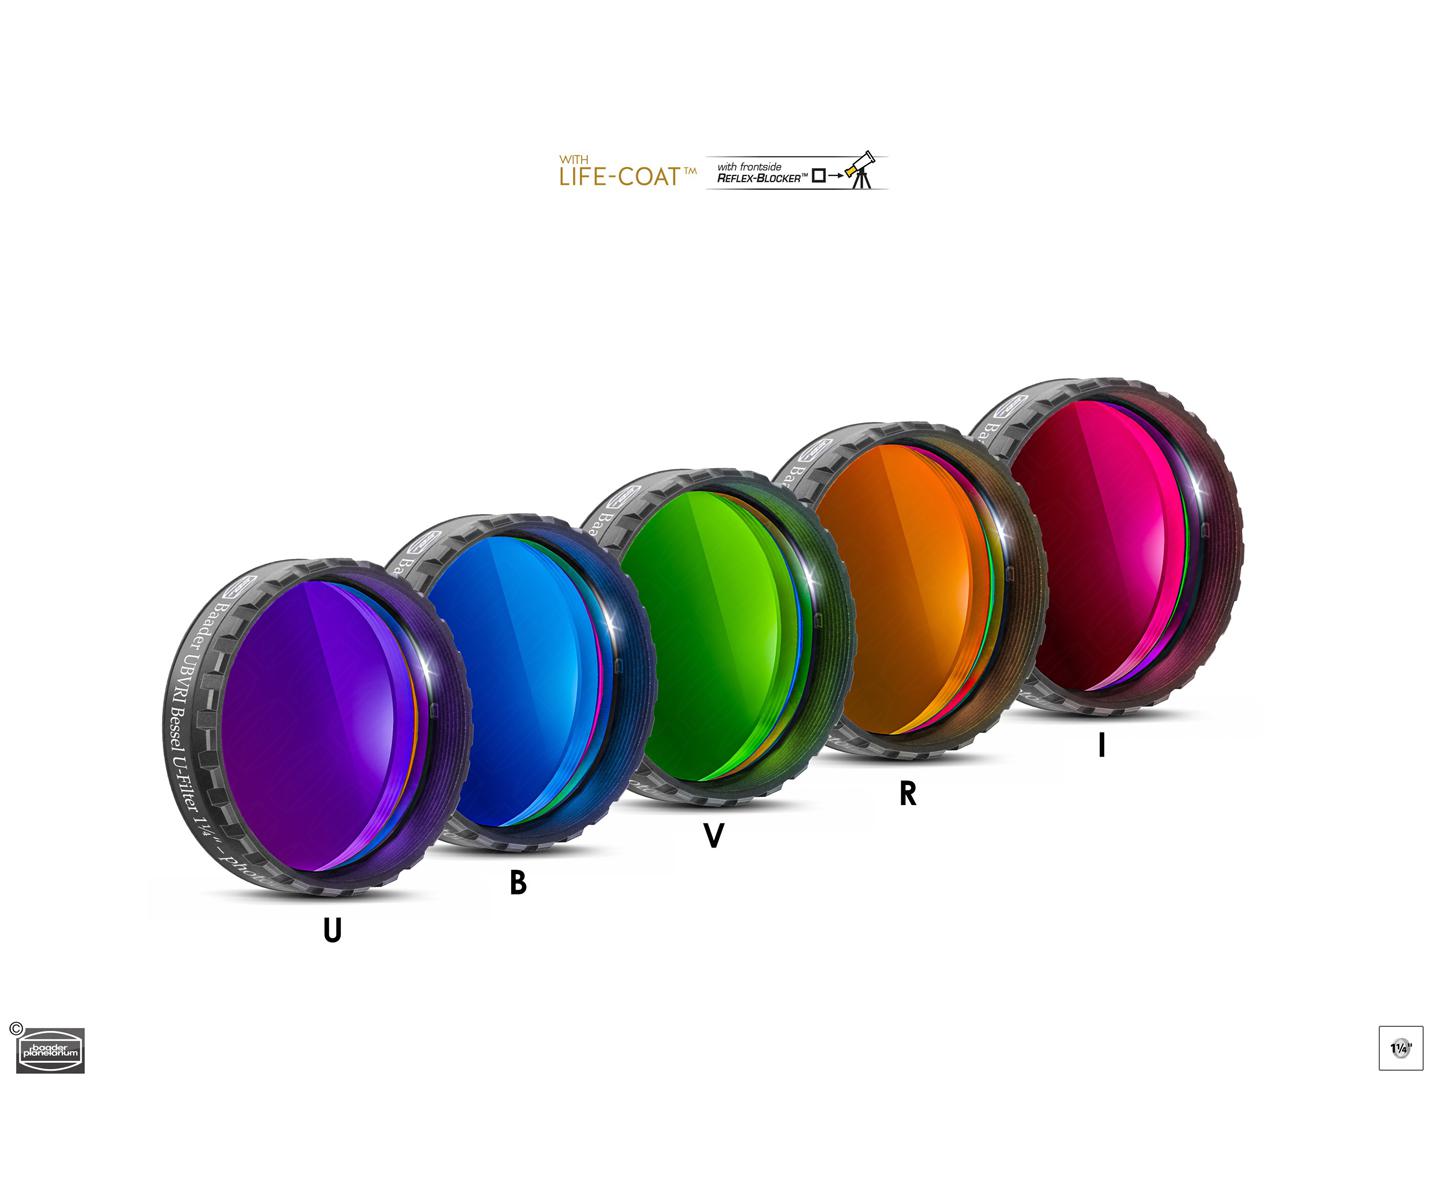  Set di Filtri Fotometrici UBVRI da 1¼" (31.8mm), con cella a basso profilo 